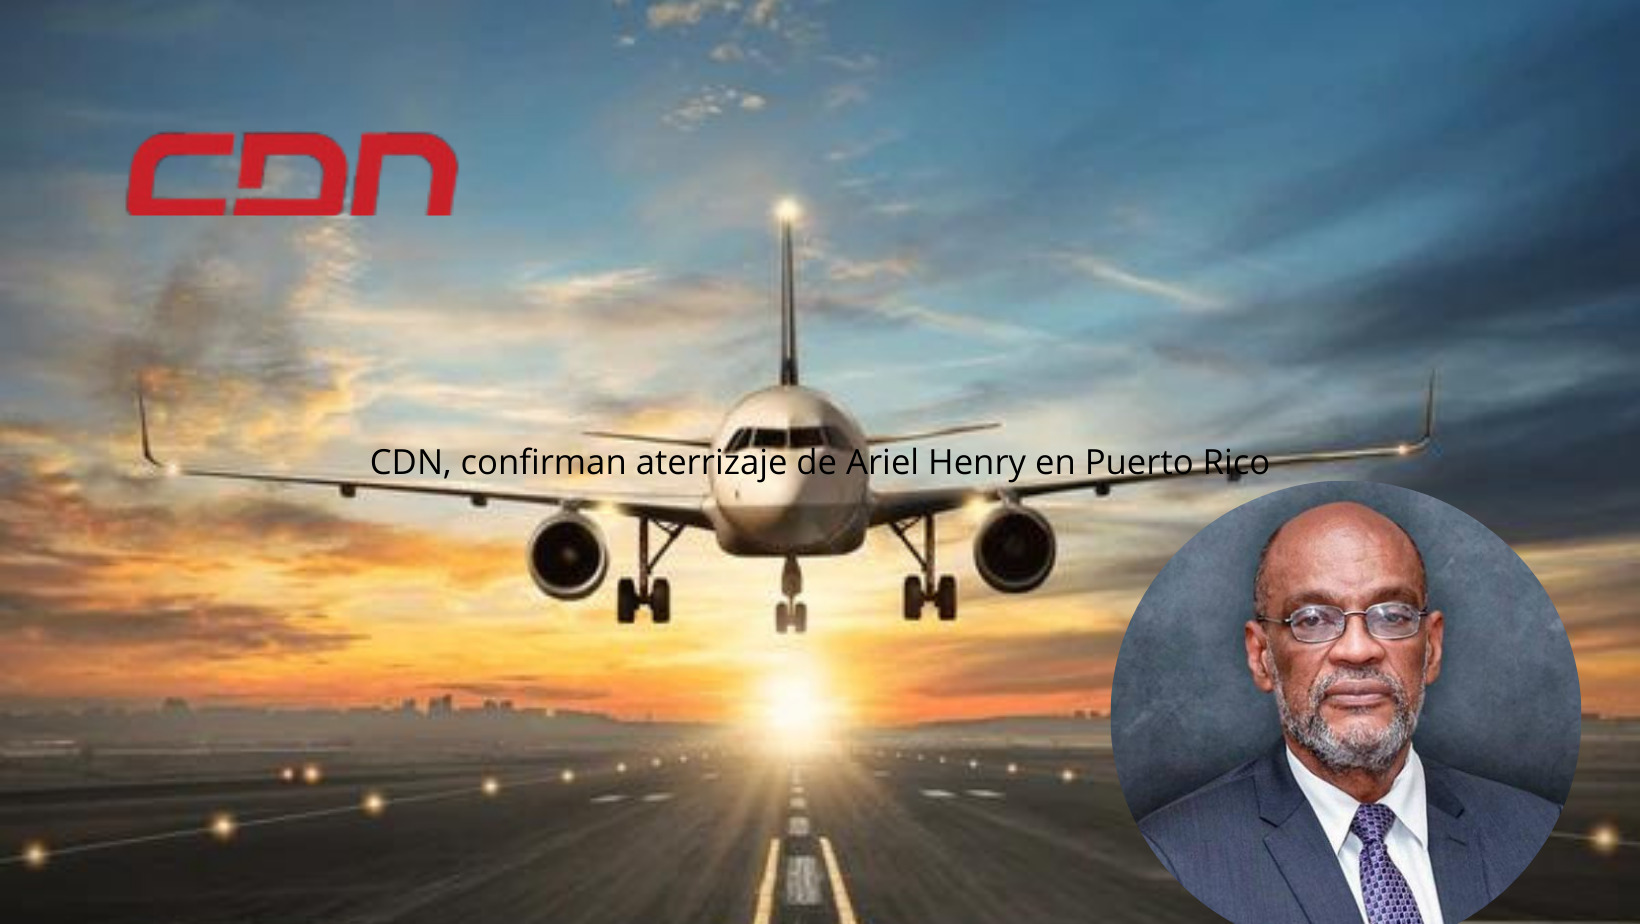 CDN, confirman aterrizaje de Ariel Henry en Puerto Rico